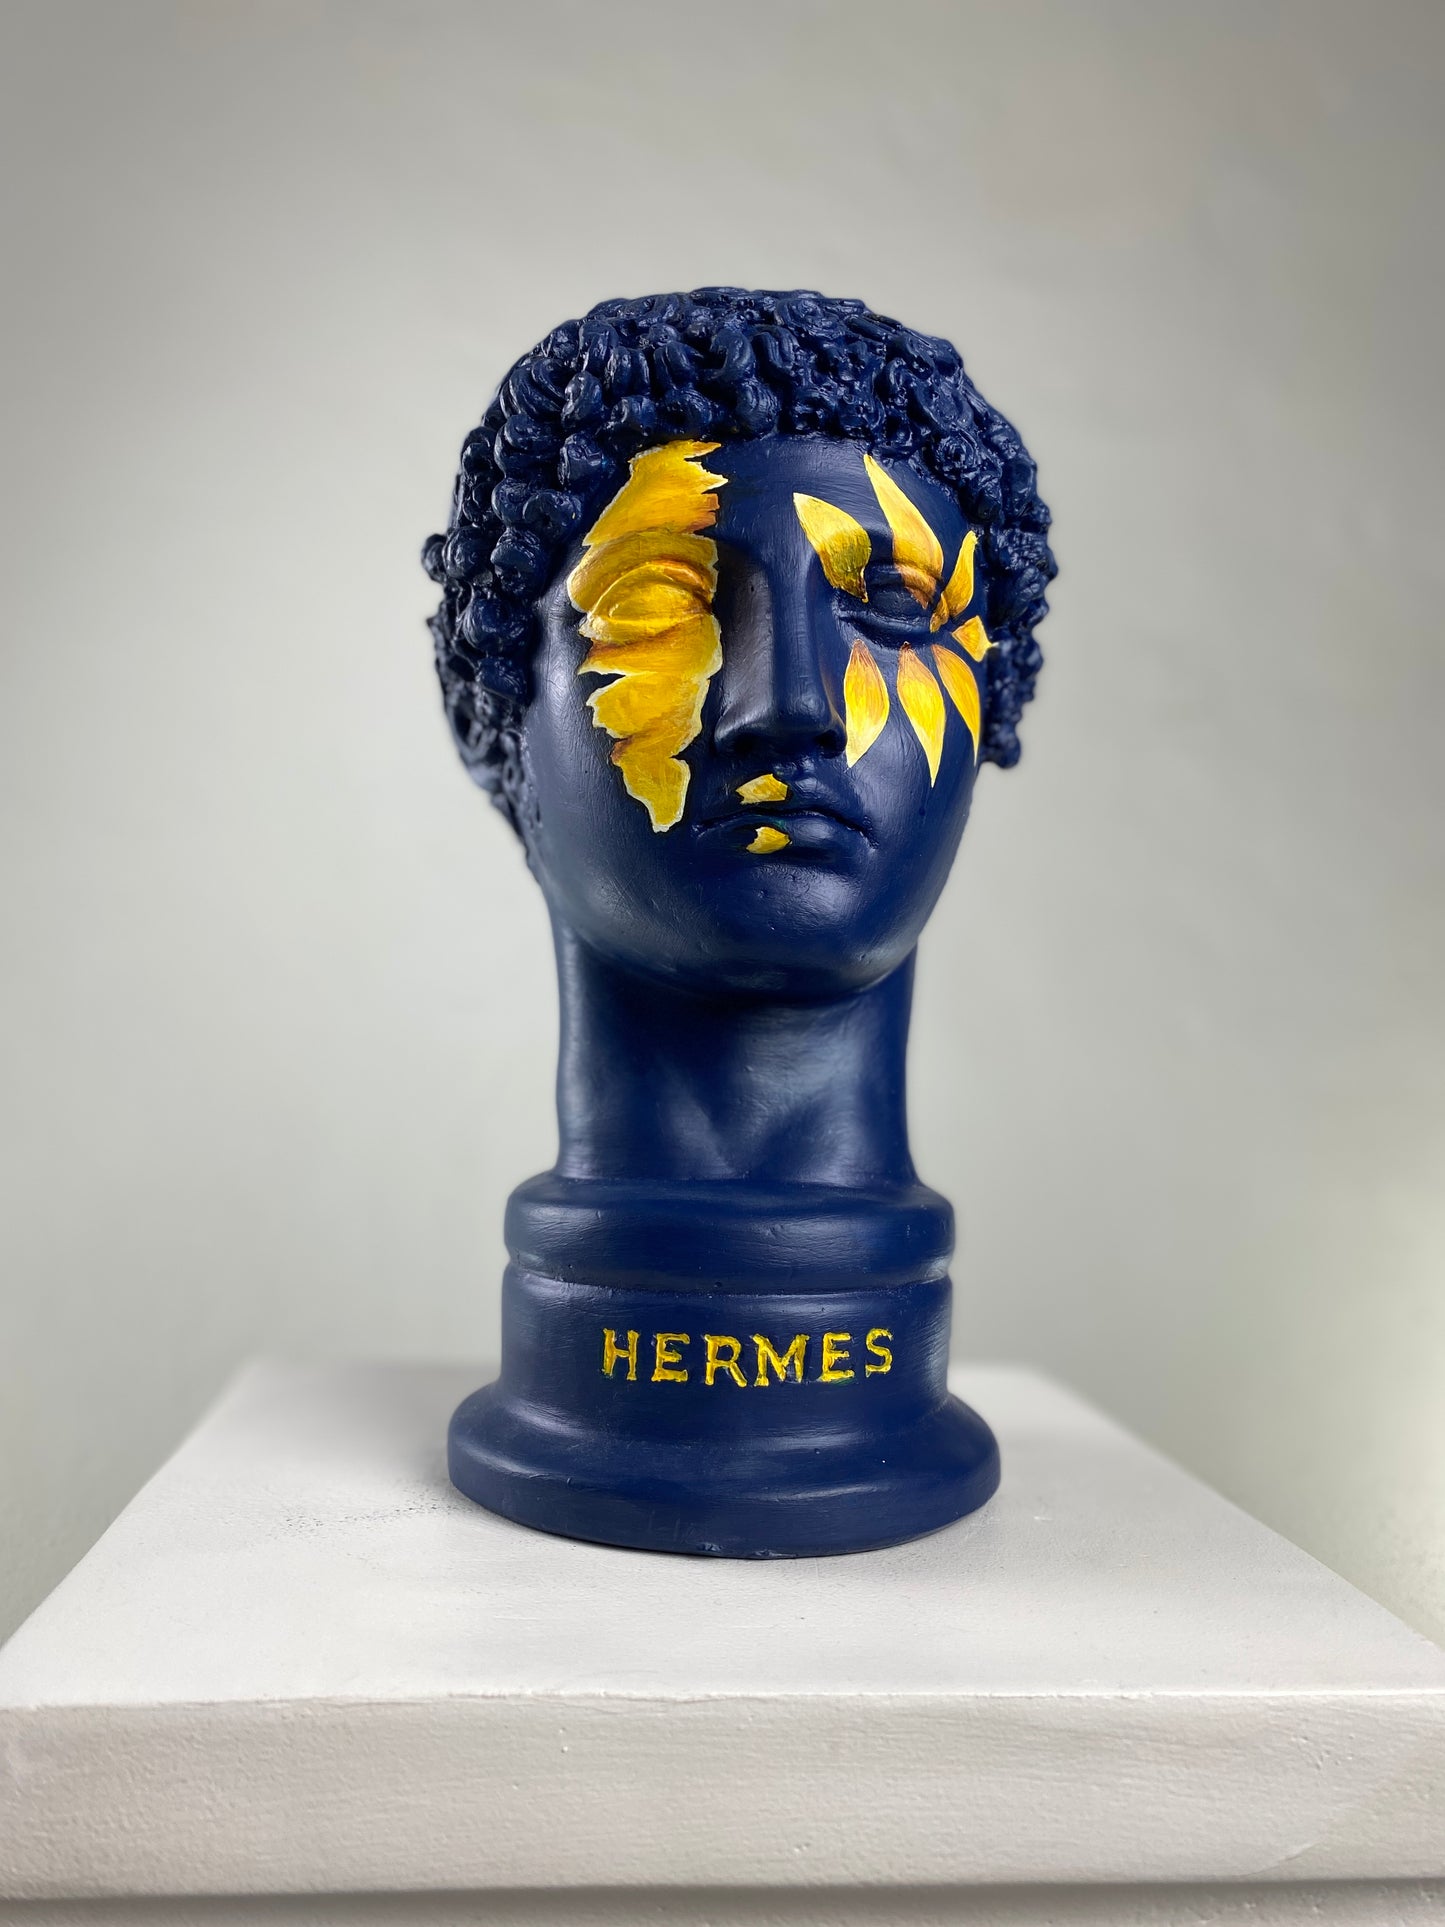 Hermes 'Sunflower' Pop Art Sculpture, Modern Home Decor